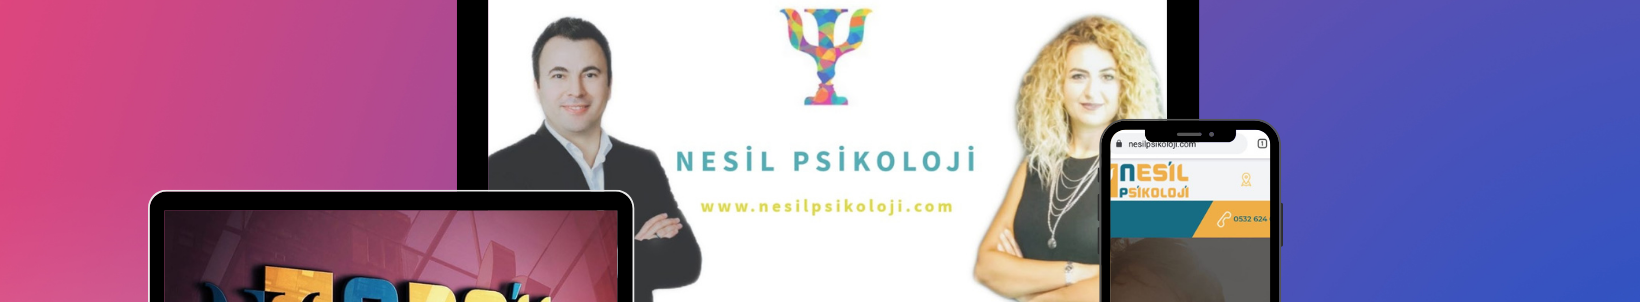 Nesil Psikoloji Eskişehir's profile banner